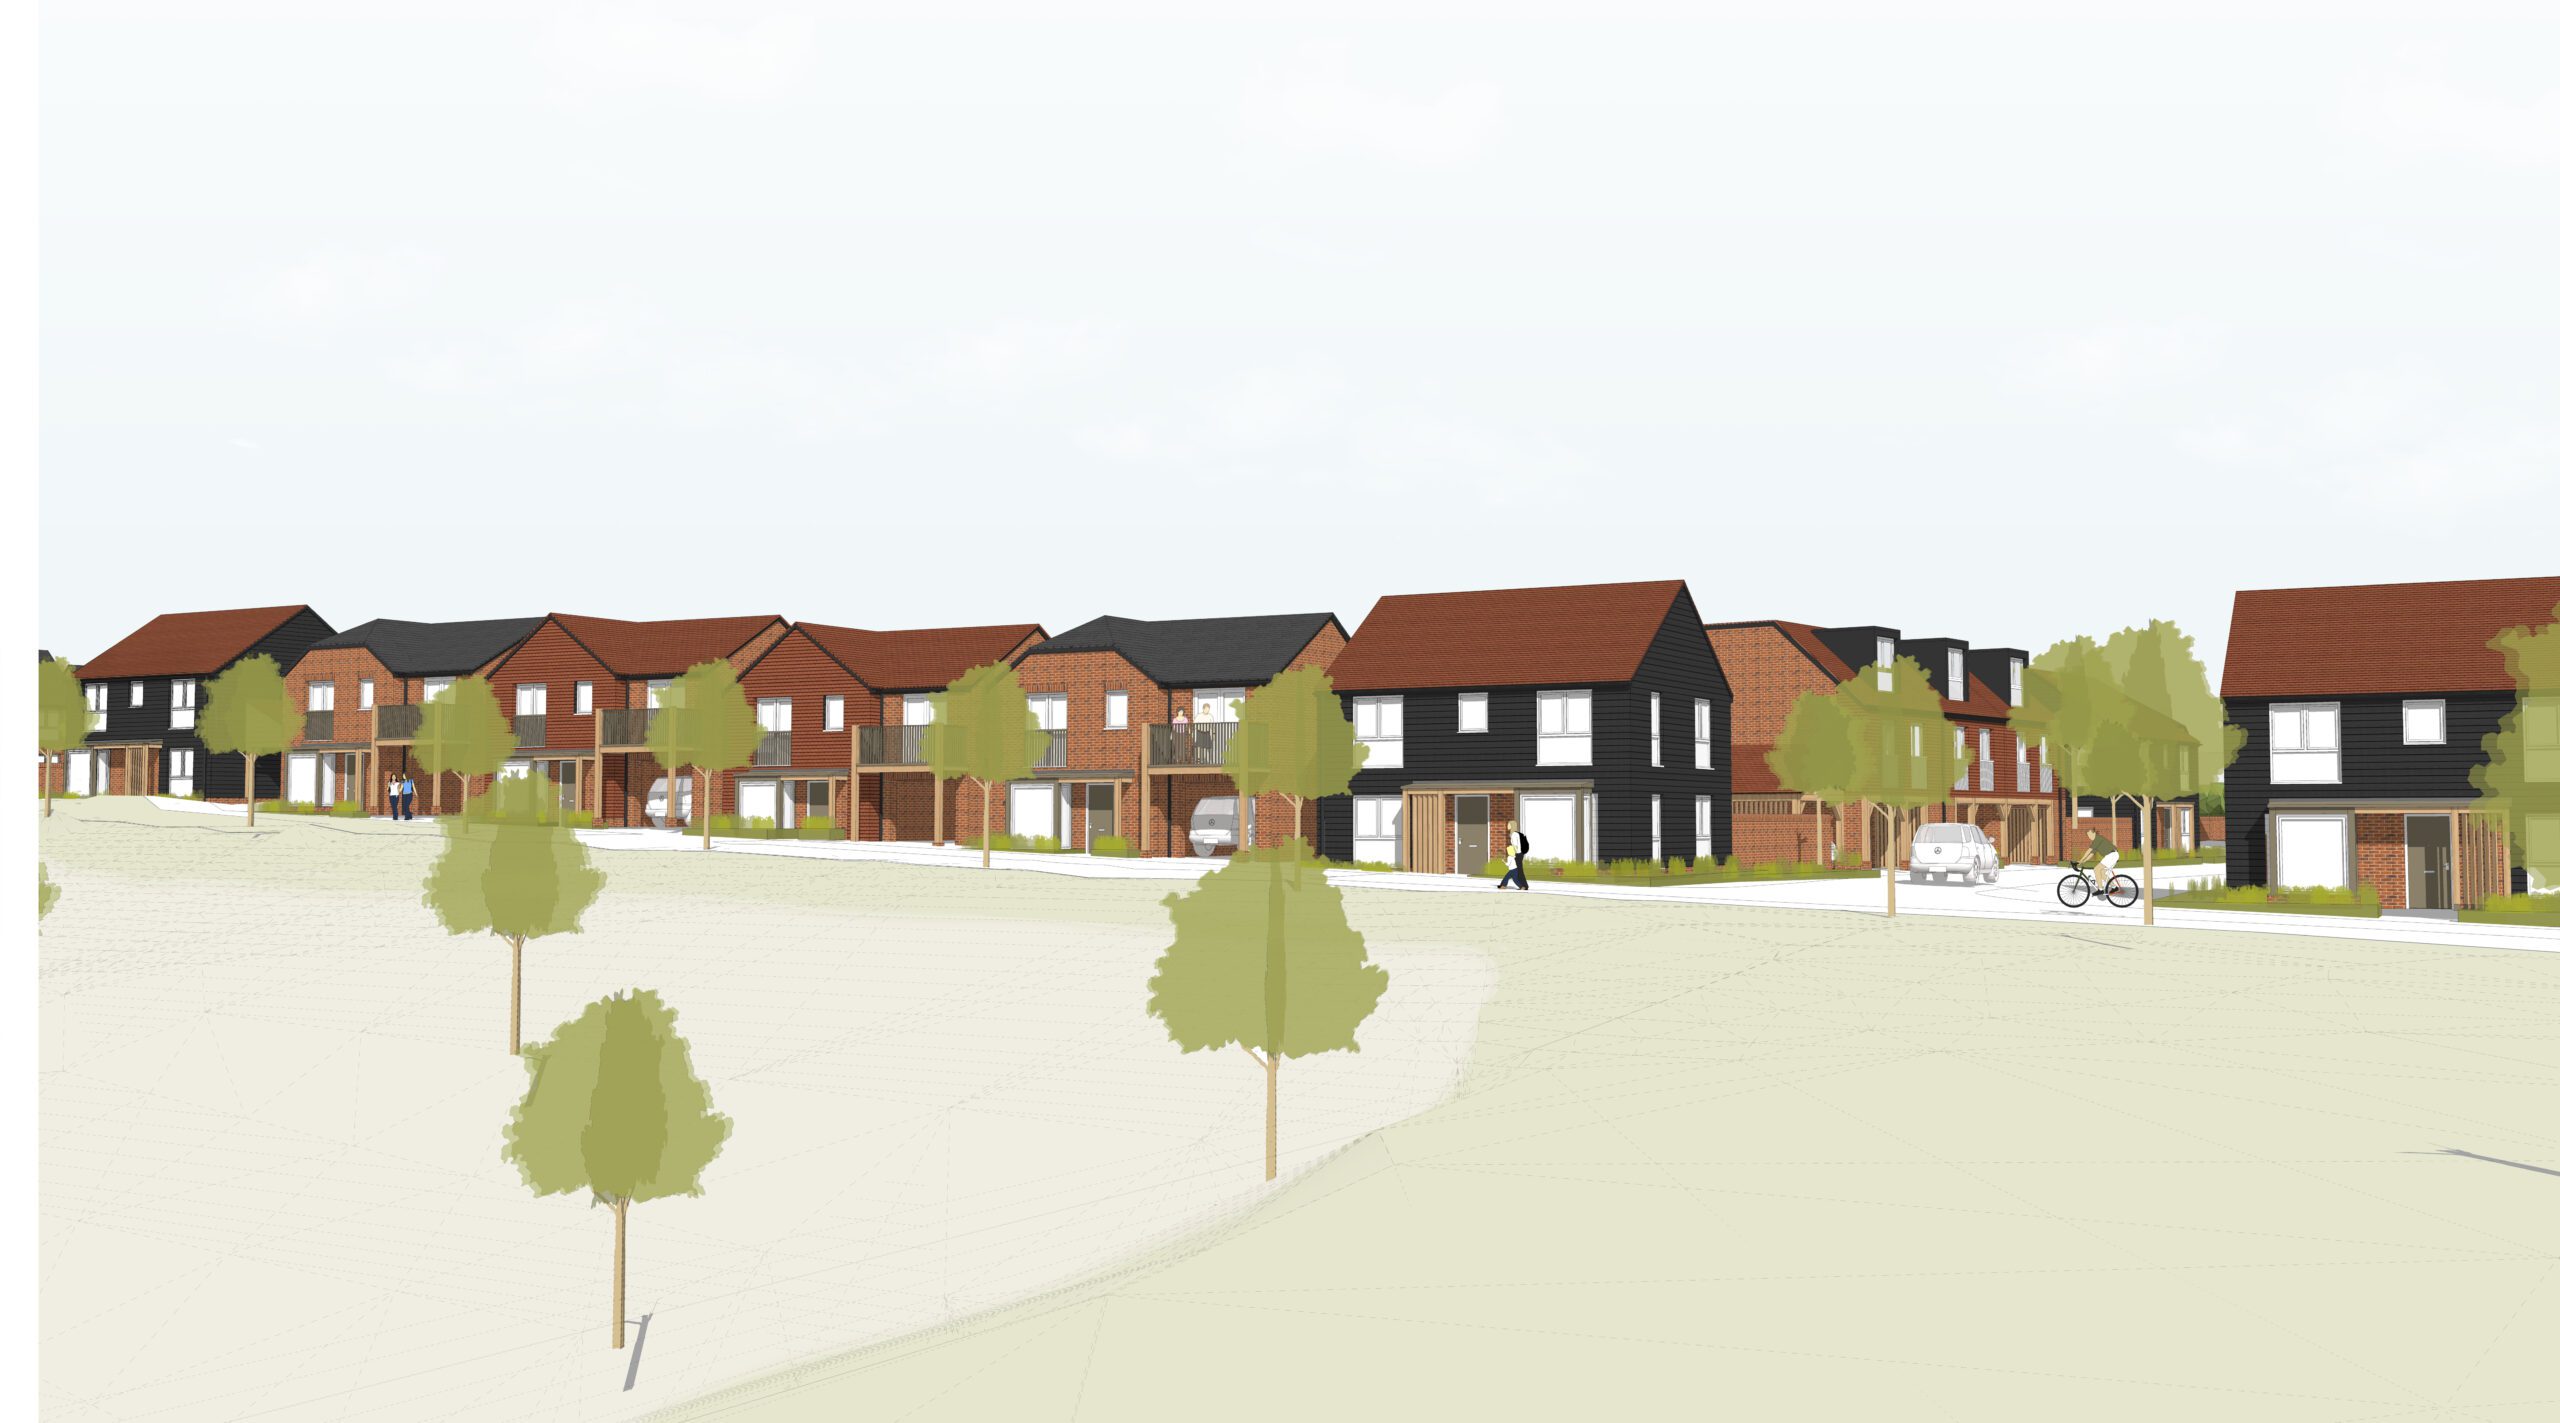 Public consultation for 5B Alkerden Village launched